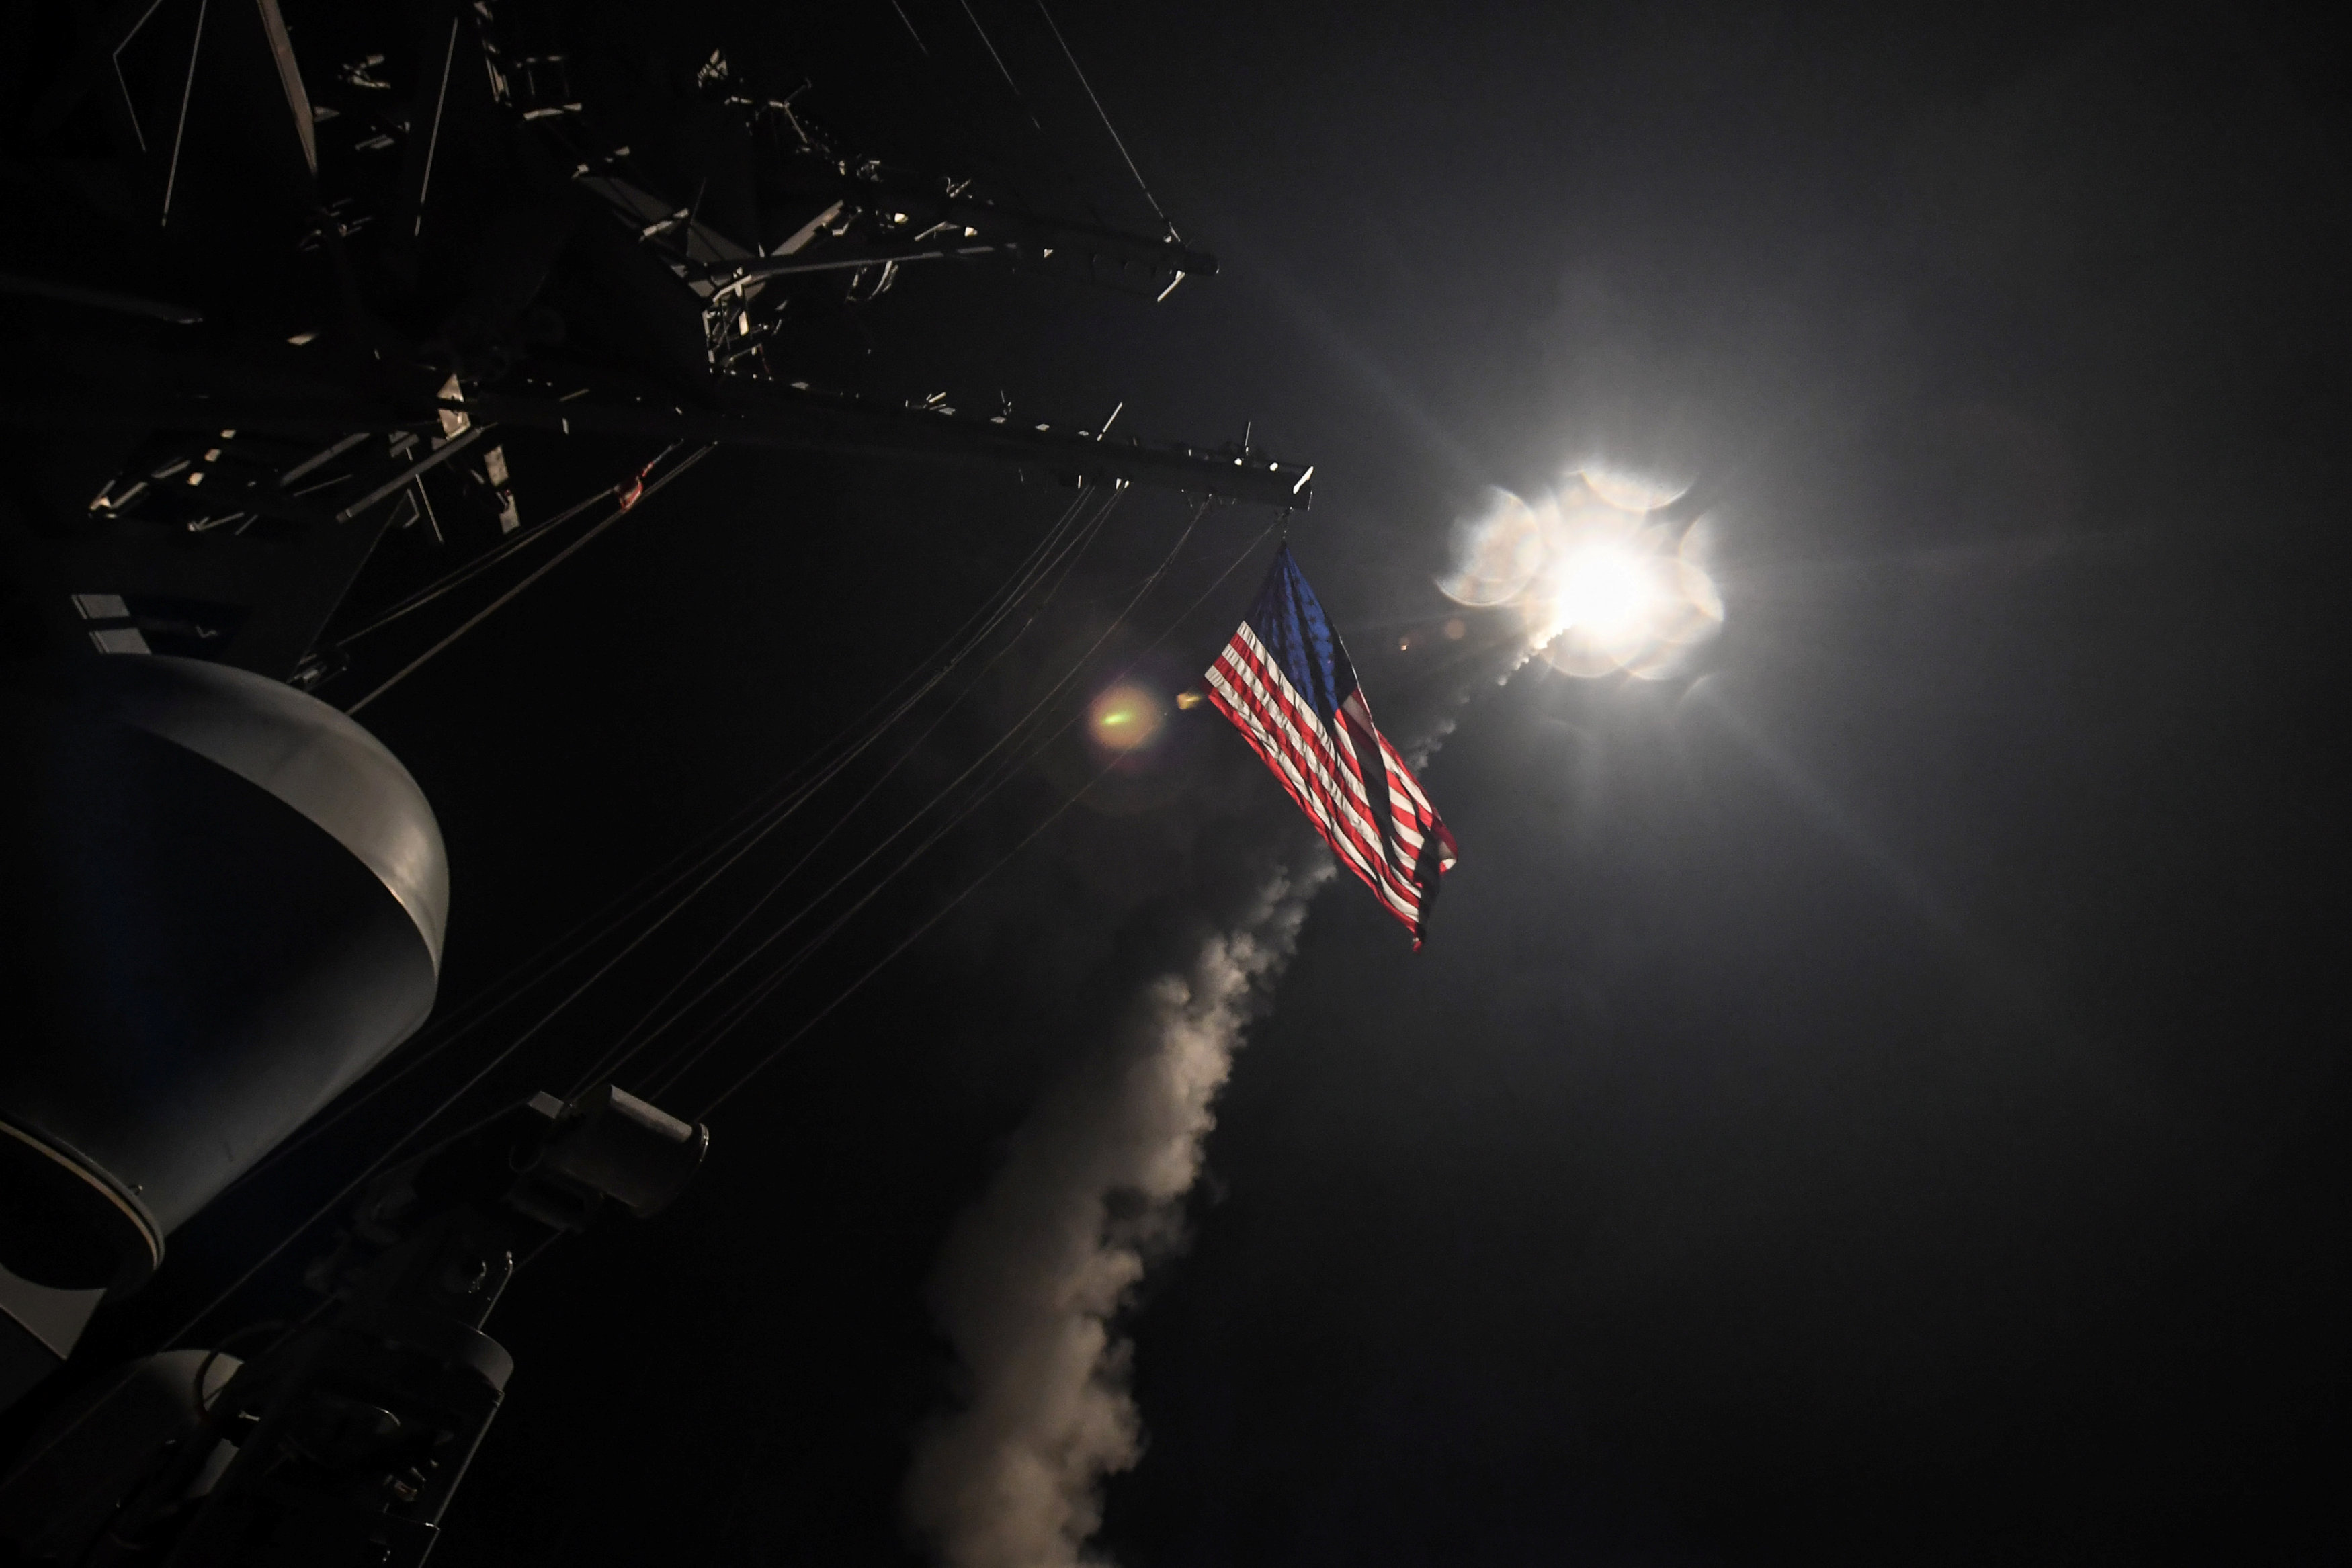 غارات أمريكية بـ 59 صاروخاً على قاعدة الشعيرات العسكرية بسوريا (5)